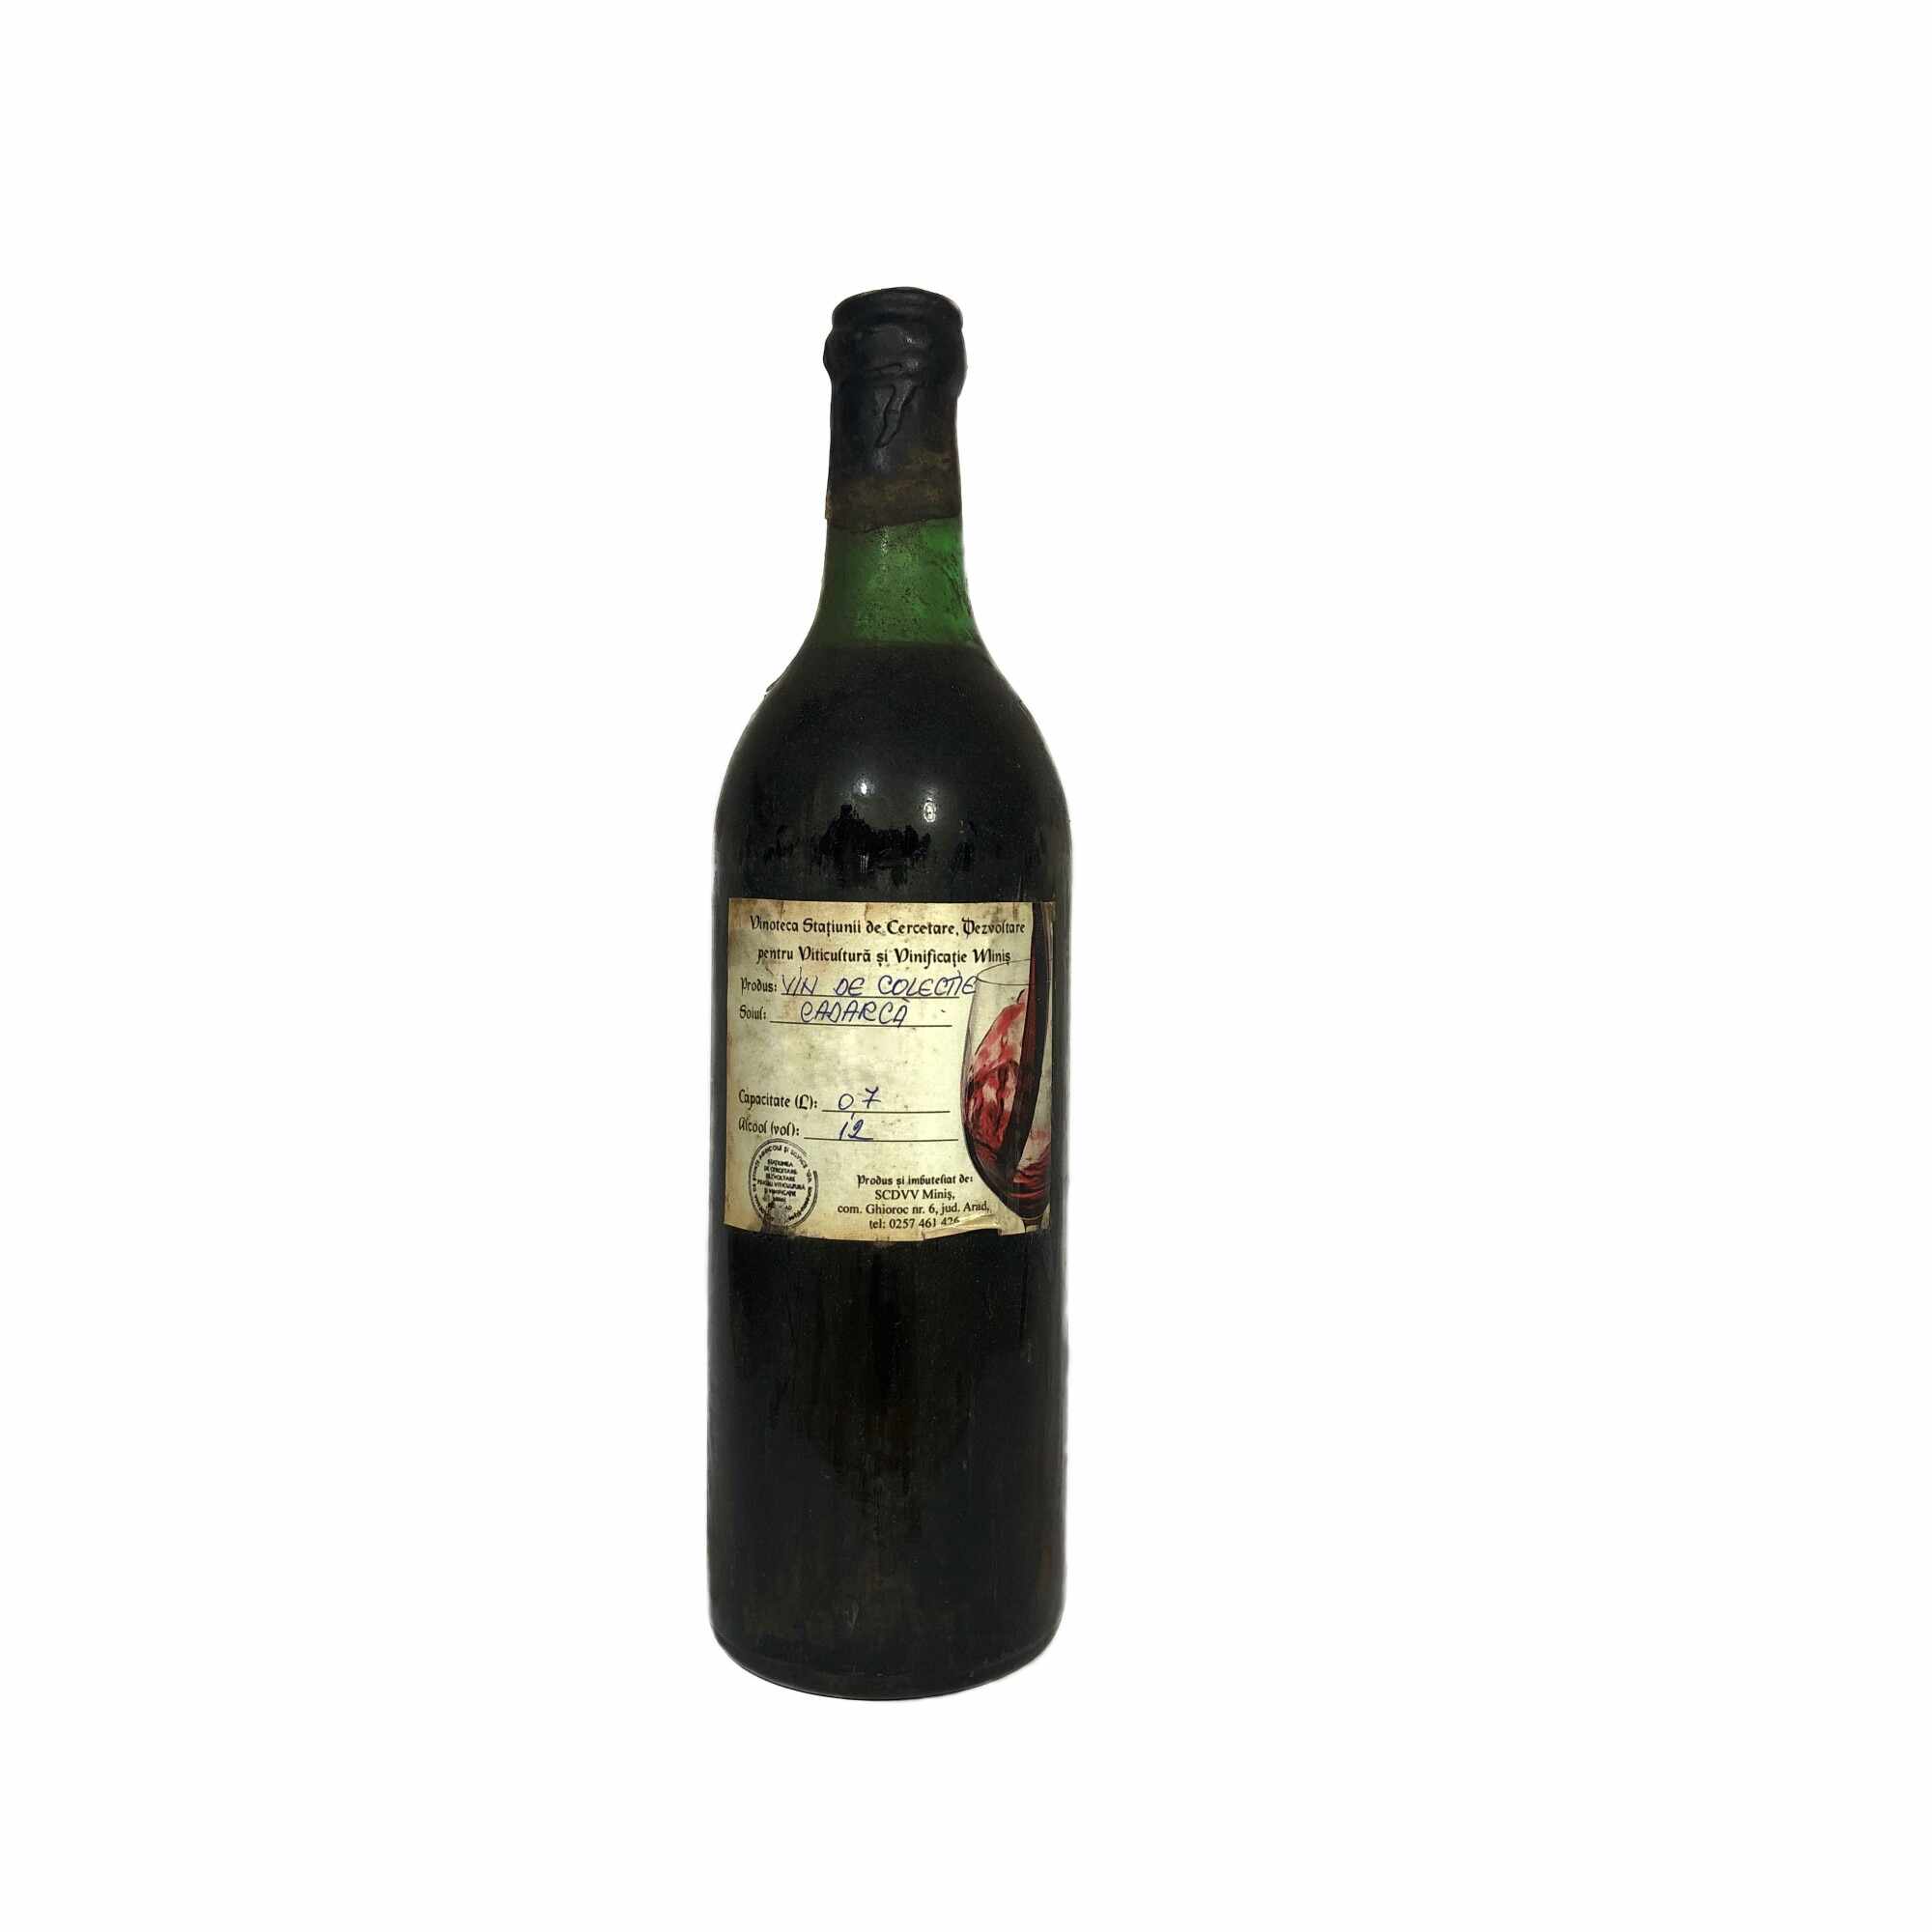 Vin rosu de colectie Cadarca - Anul 1967 in cutie de lemn, 700 ml